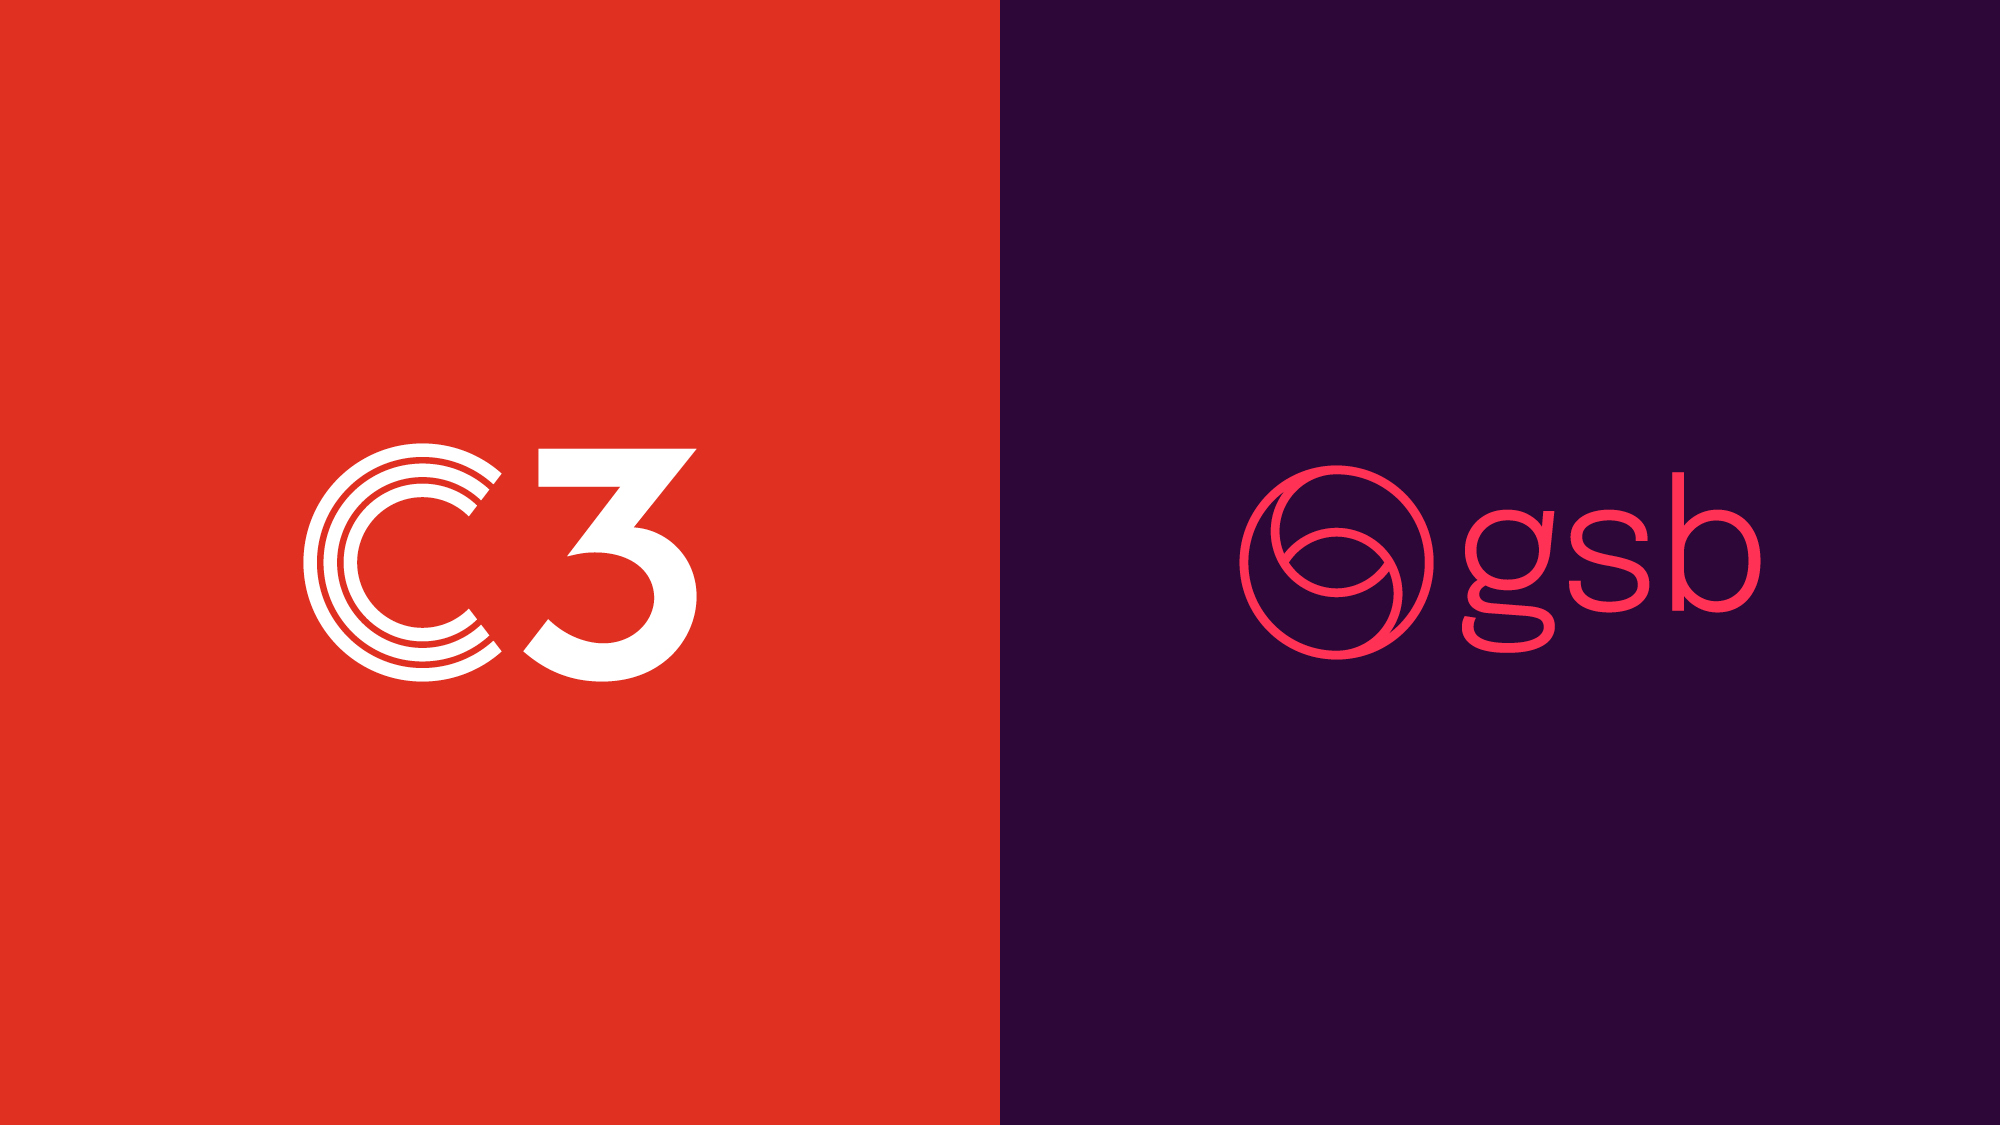 Entity-3-Three-Brand-Design-Agency-Sydney-Logo-Selection-5-identity-brand-marks